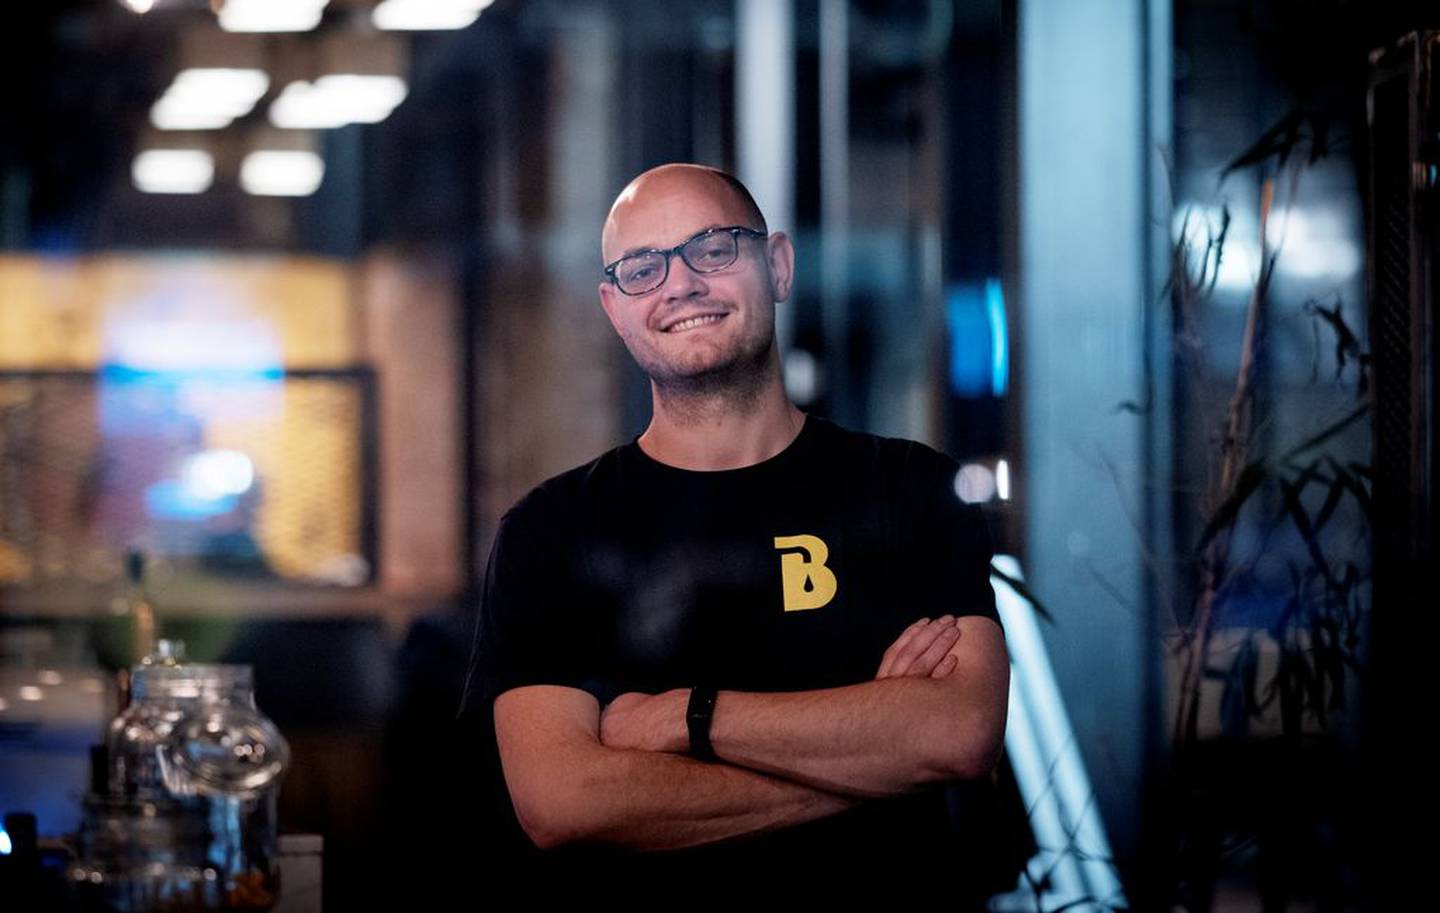 Håkon Martin Eide hadde kontorstilling i informatikkbransjen, men nå jobber han fulltid ved Brygg, og har vært her i fire år.

Foto: Tri Nguyen Dinh/FriFagbevegelse